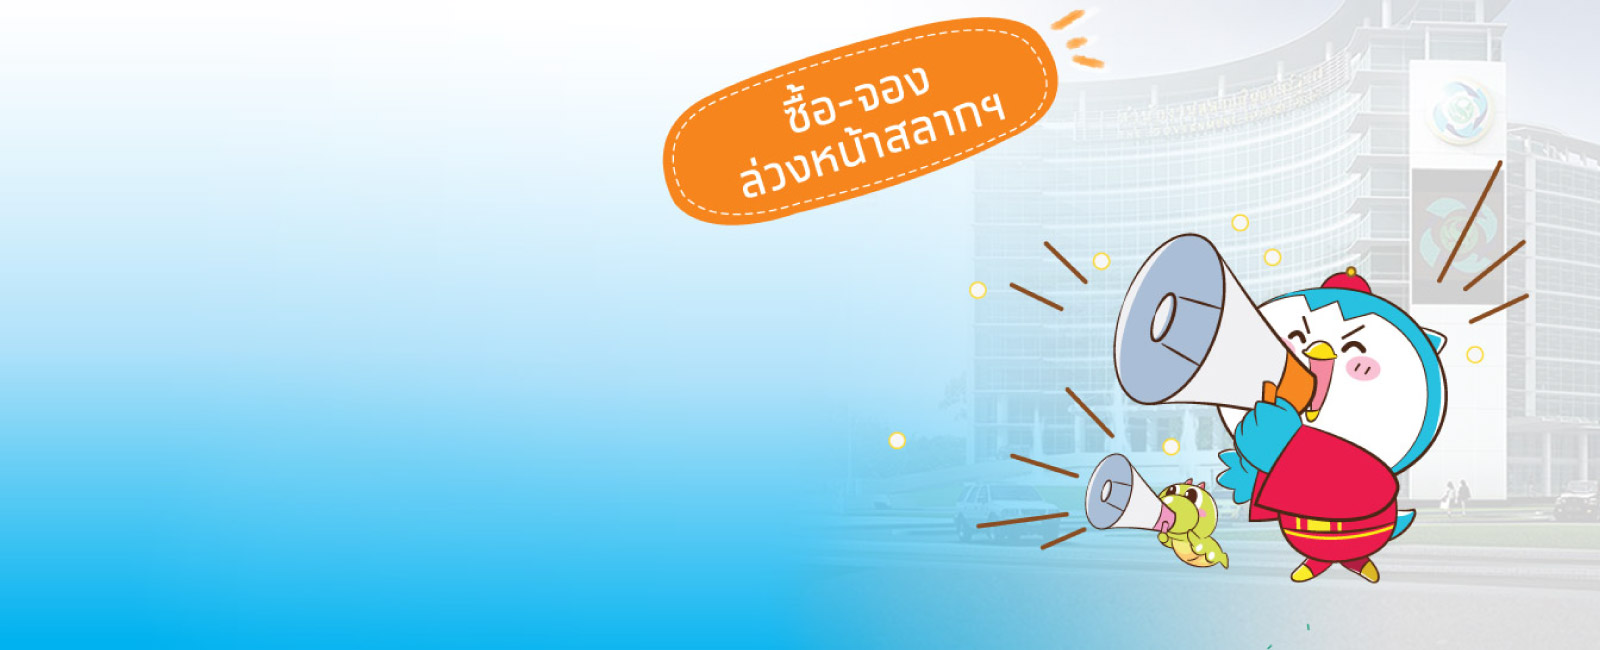 ซื้อลอตเตอรี่ออนไลน์ - ธนาคารกรุงไทย